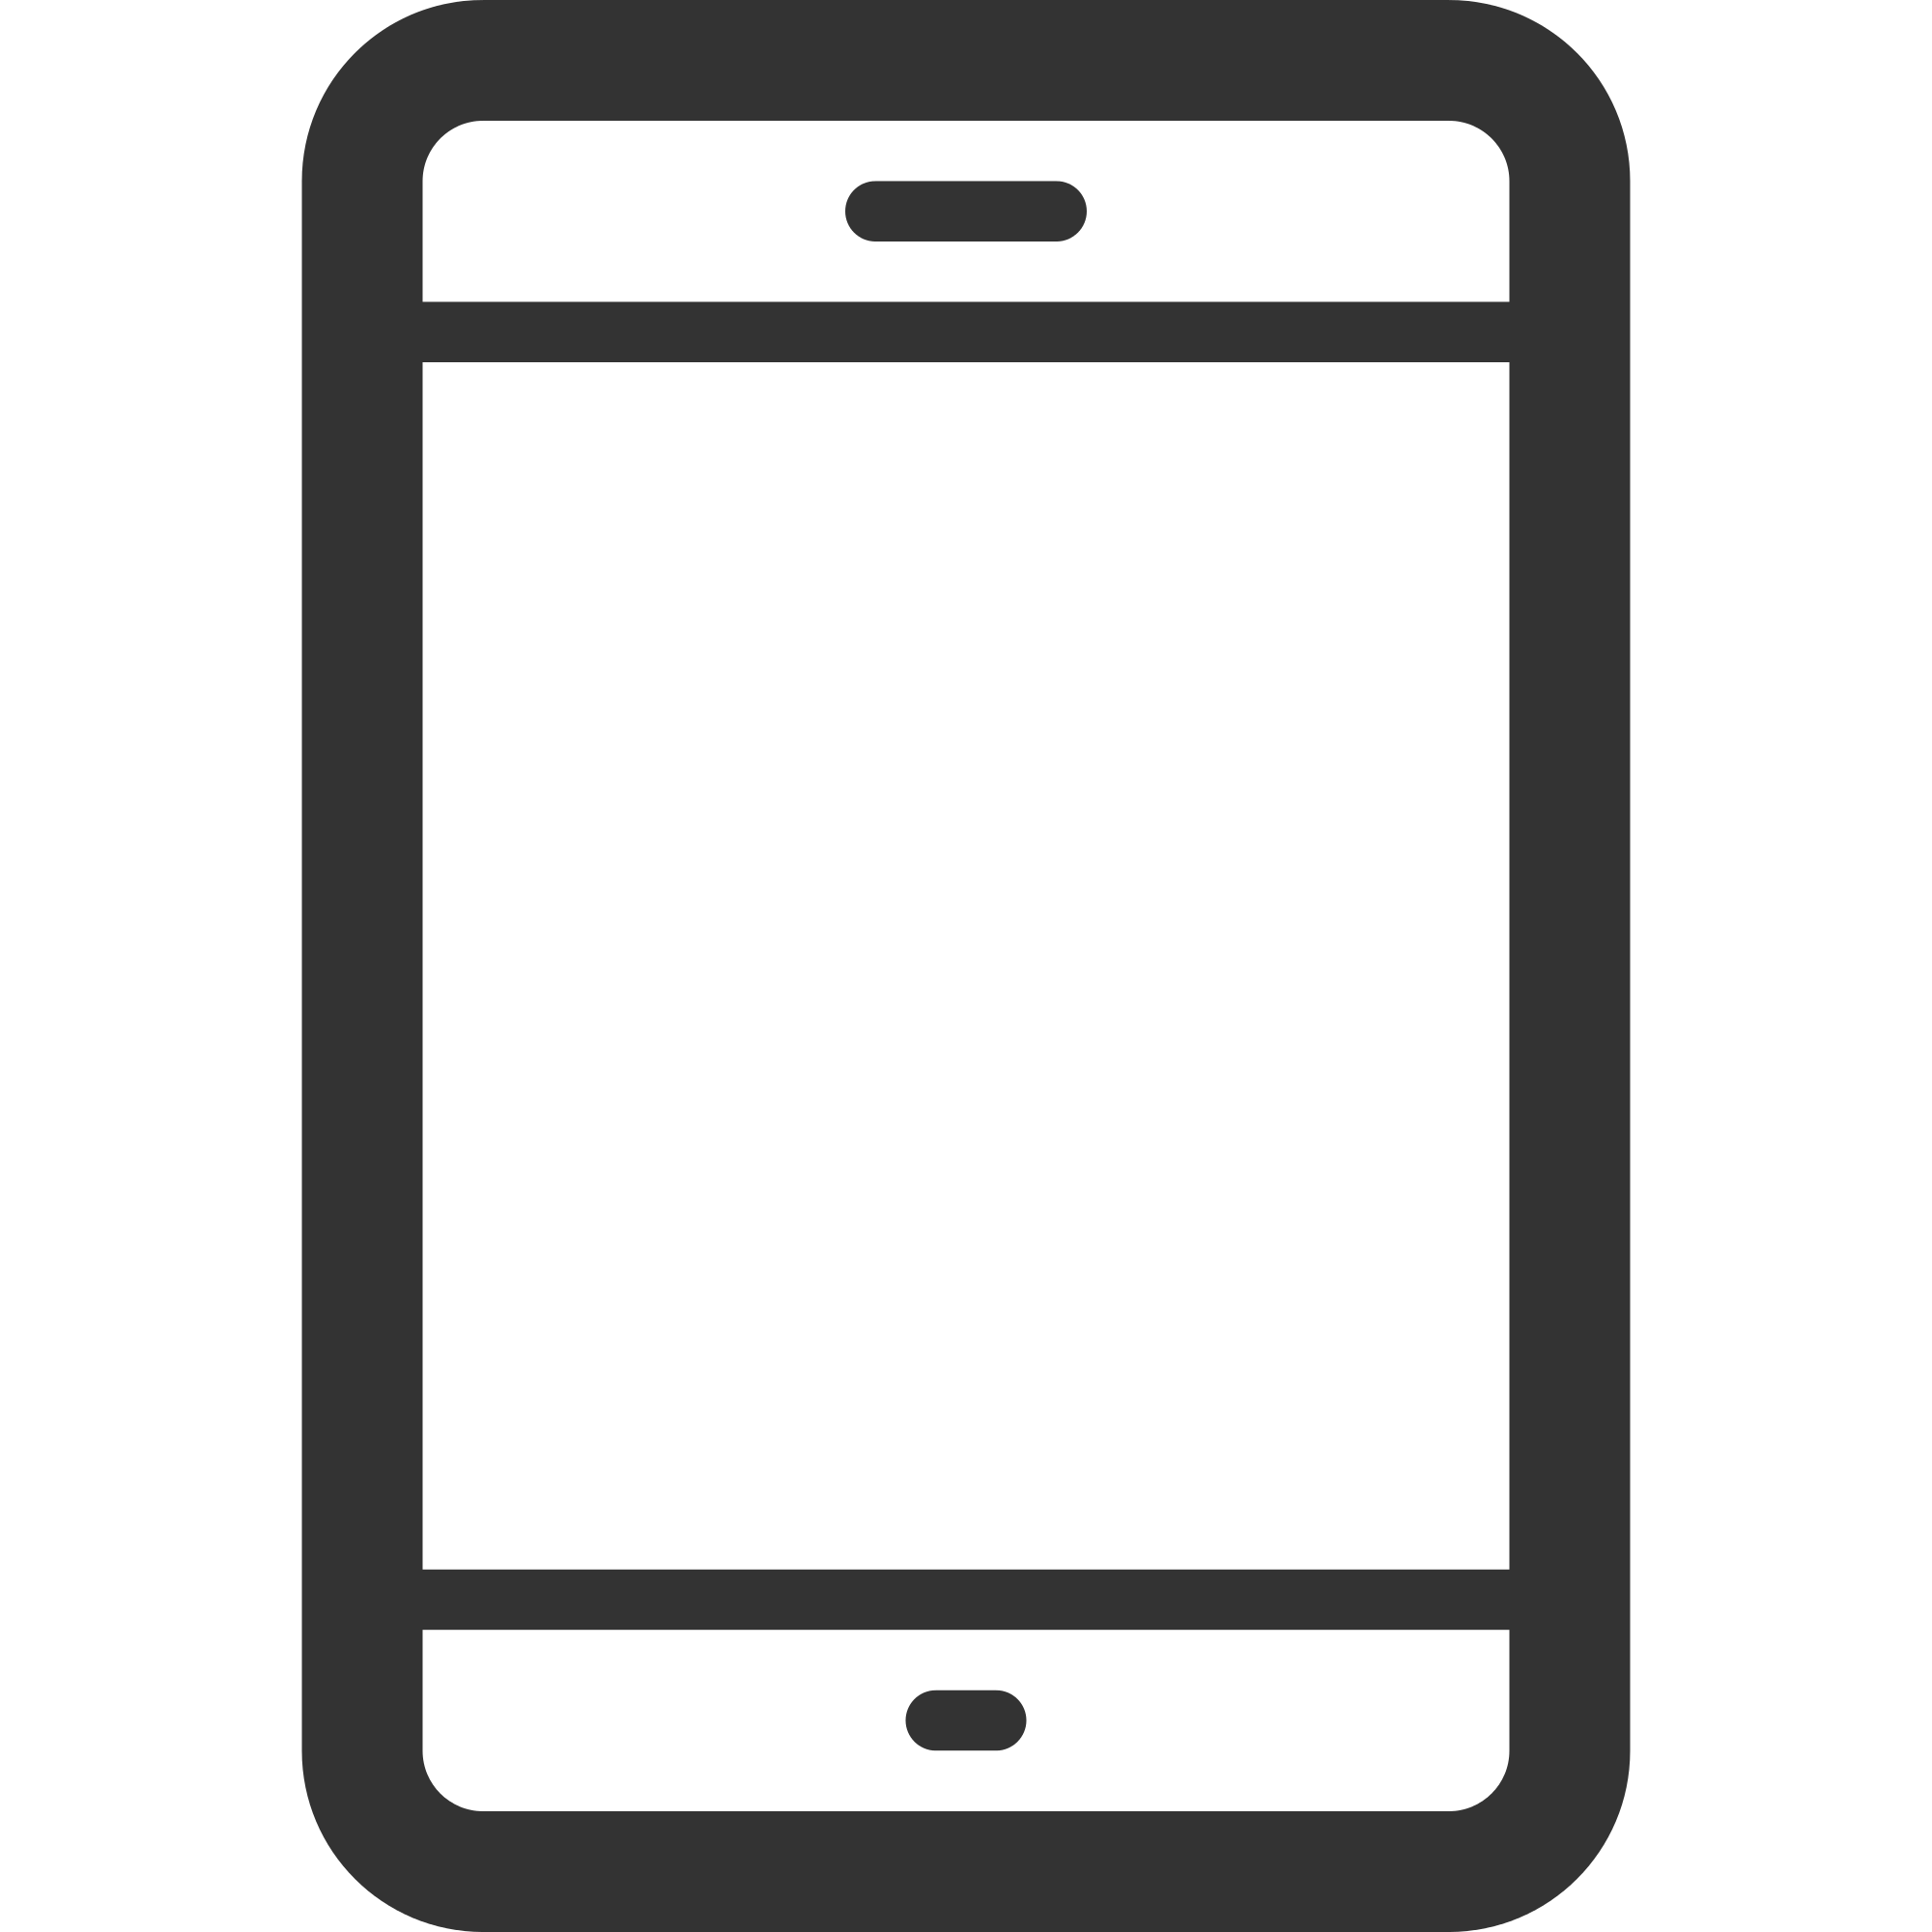 File:Linecons smartphone-outline.svg